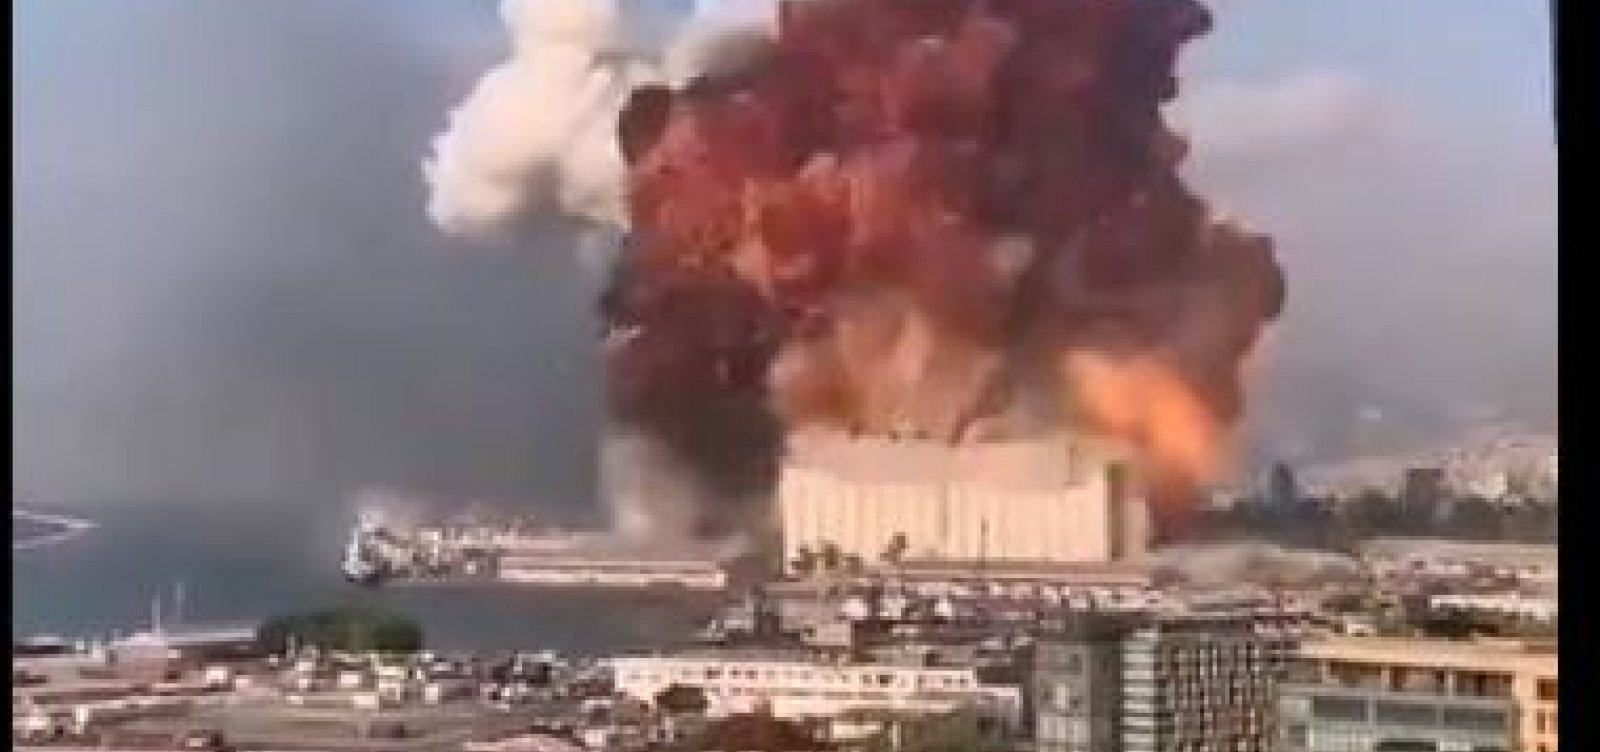 [Explosão de grandes proporções atinge Beirute, capital do Líbano; veja vídeo]